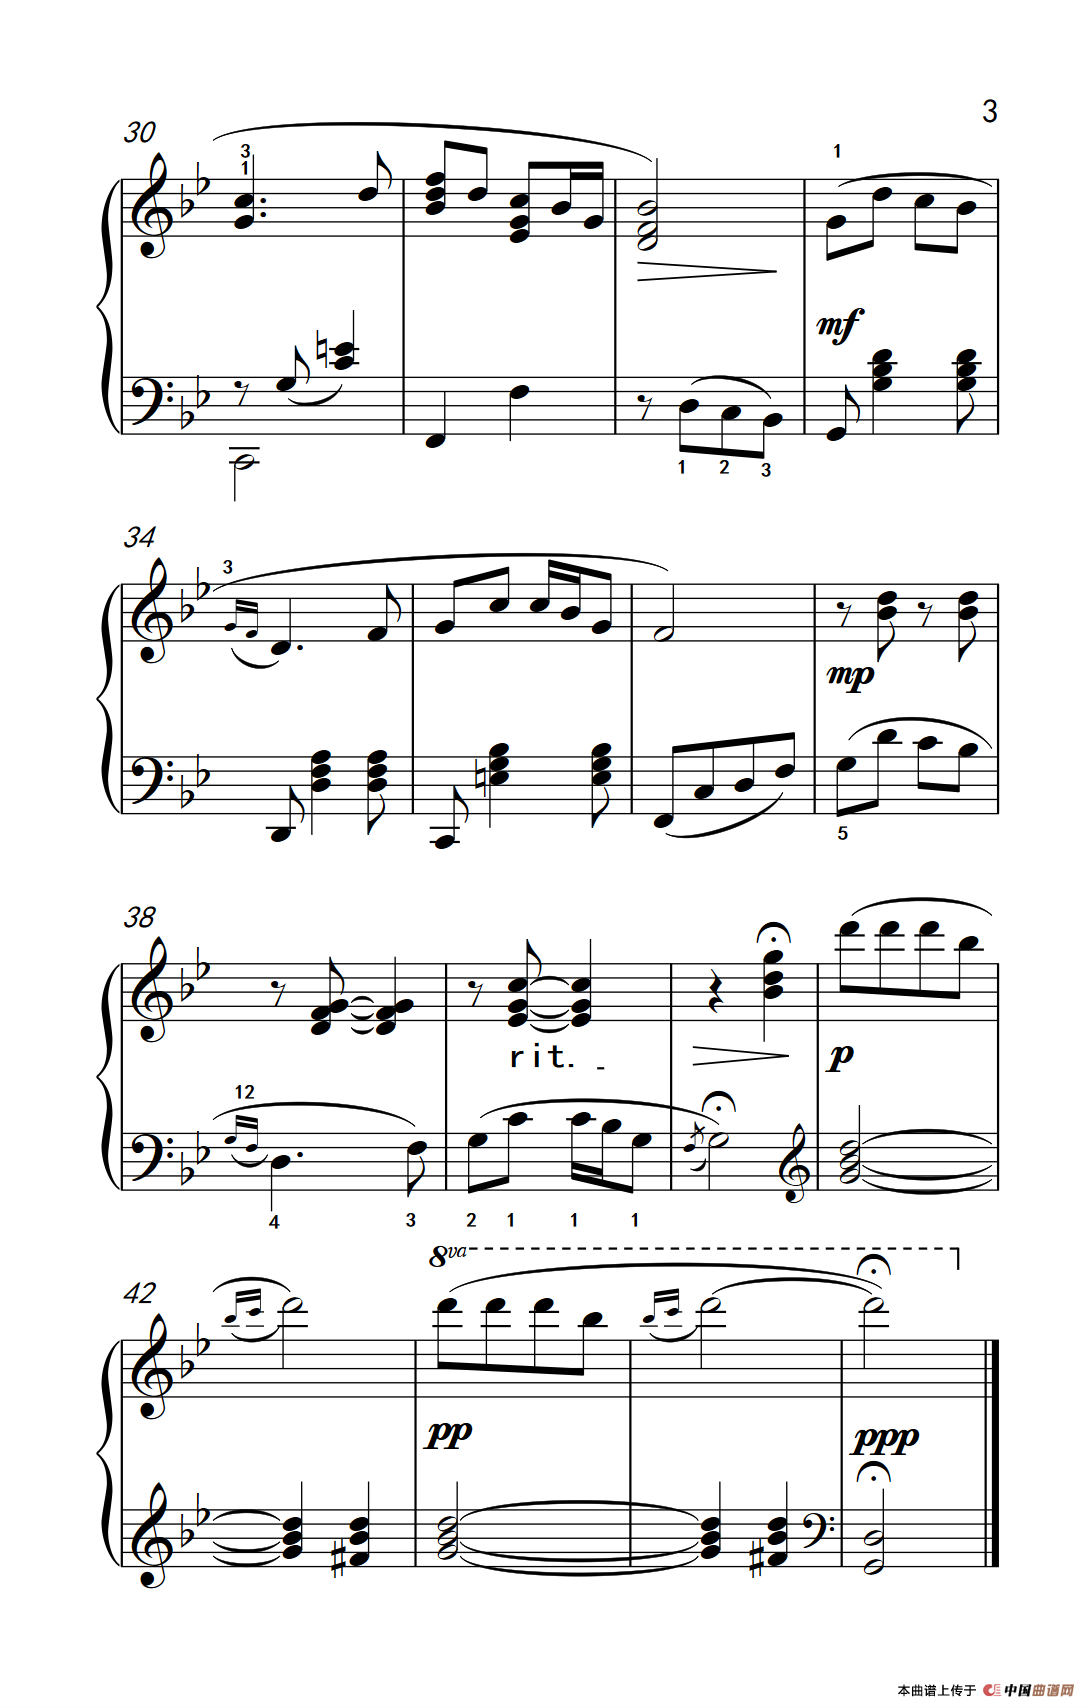 《映山红》钢琴曲谱图分享